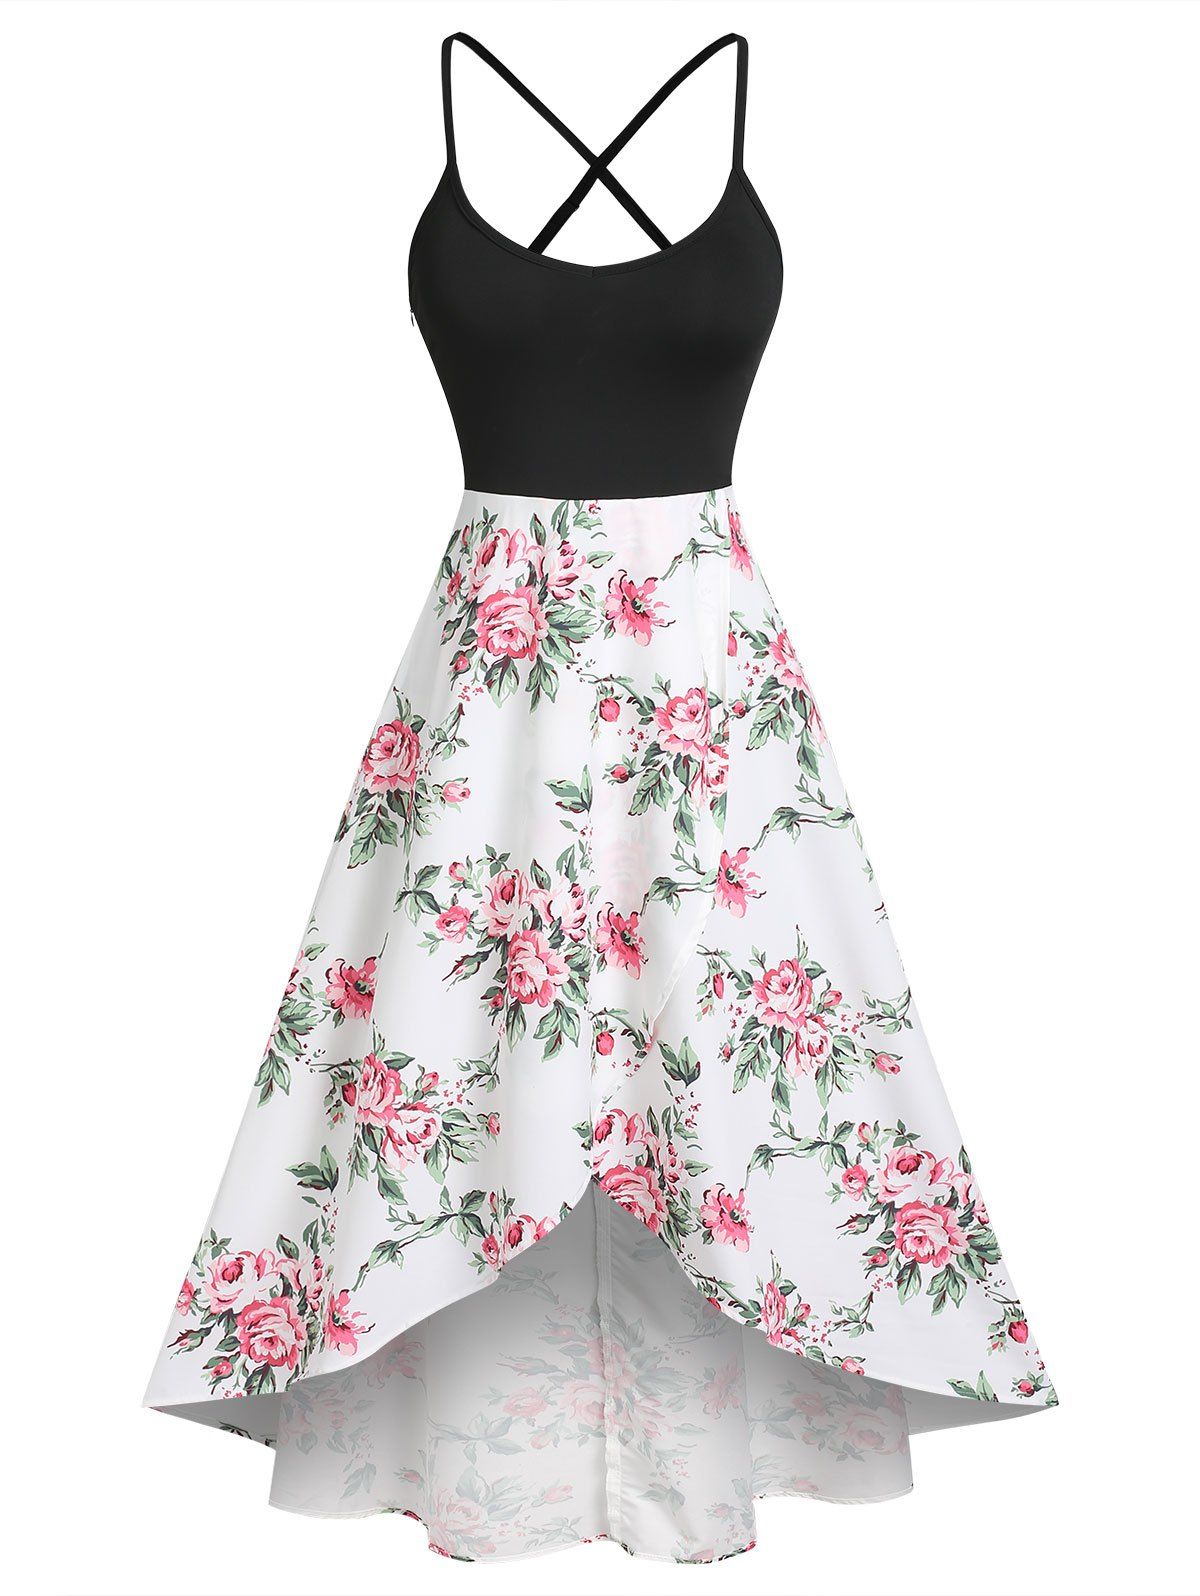 Flower Print Vacation Sundress Criss Cross Garden Party Dress Overlap High Low Cami Dress - BLACK XXL